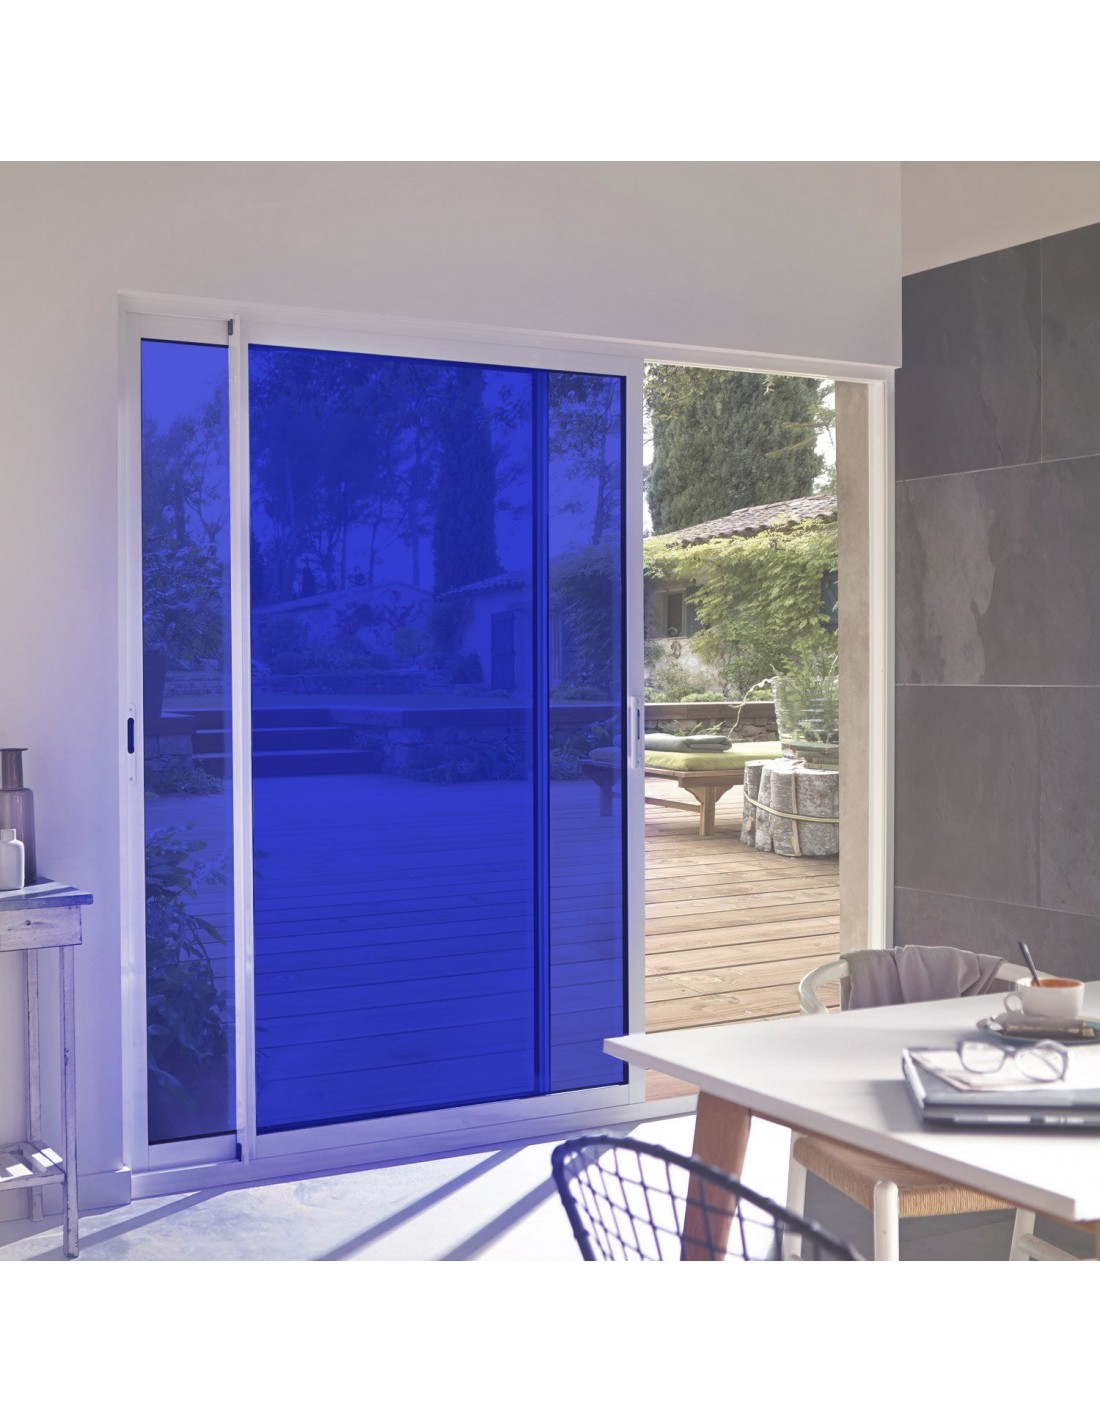 Film adhésif bleu ultra transparent pour décoration surface vitrée